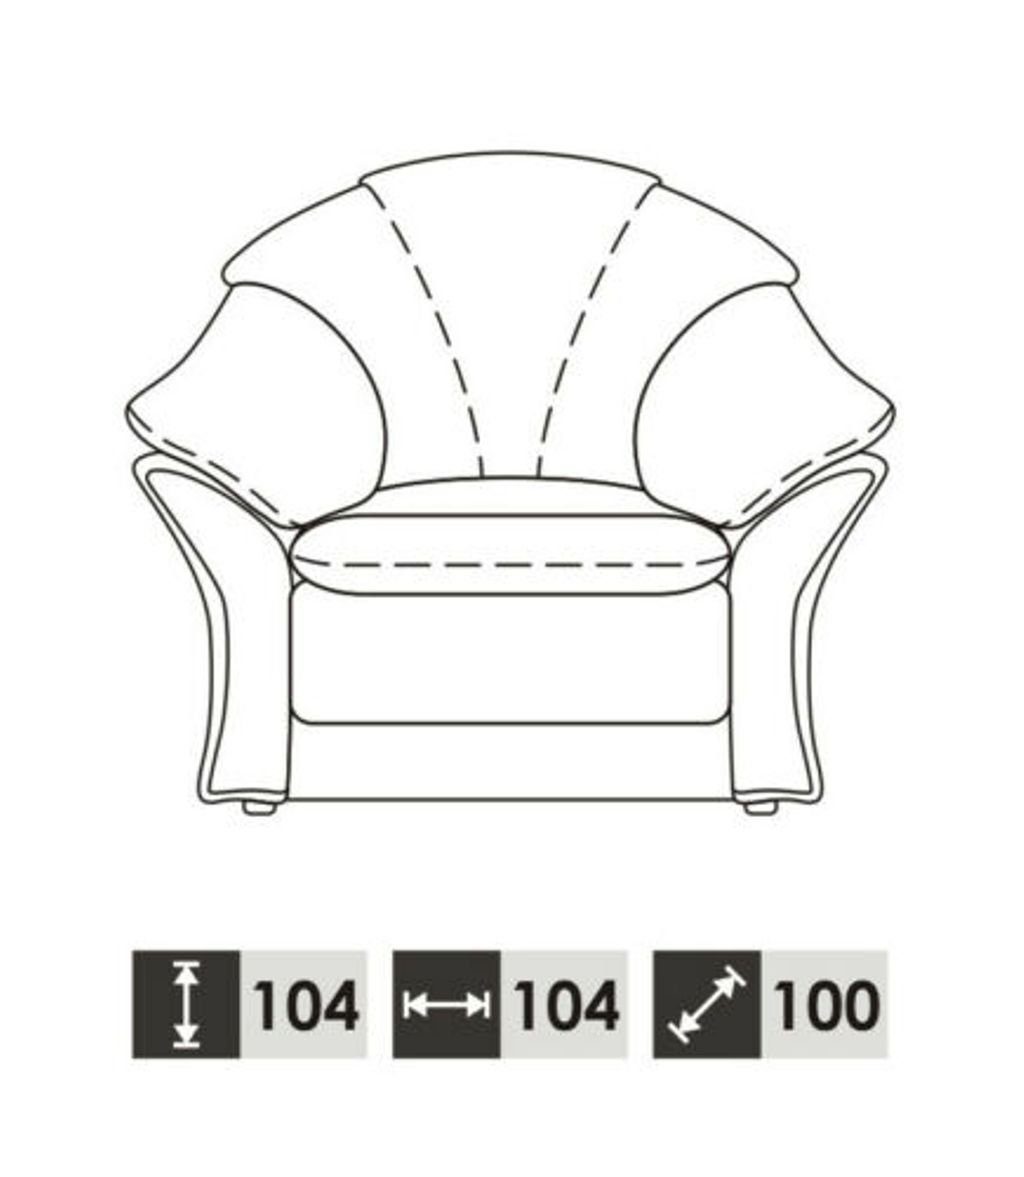 JVmoebel Sofa 100% 3+1 in Wohnzimmer Garnitur Made Vollleder Europe Couch, Klassische